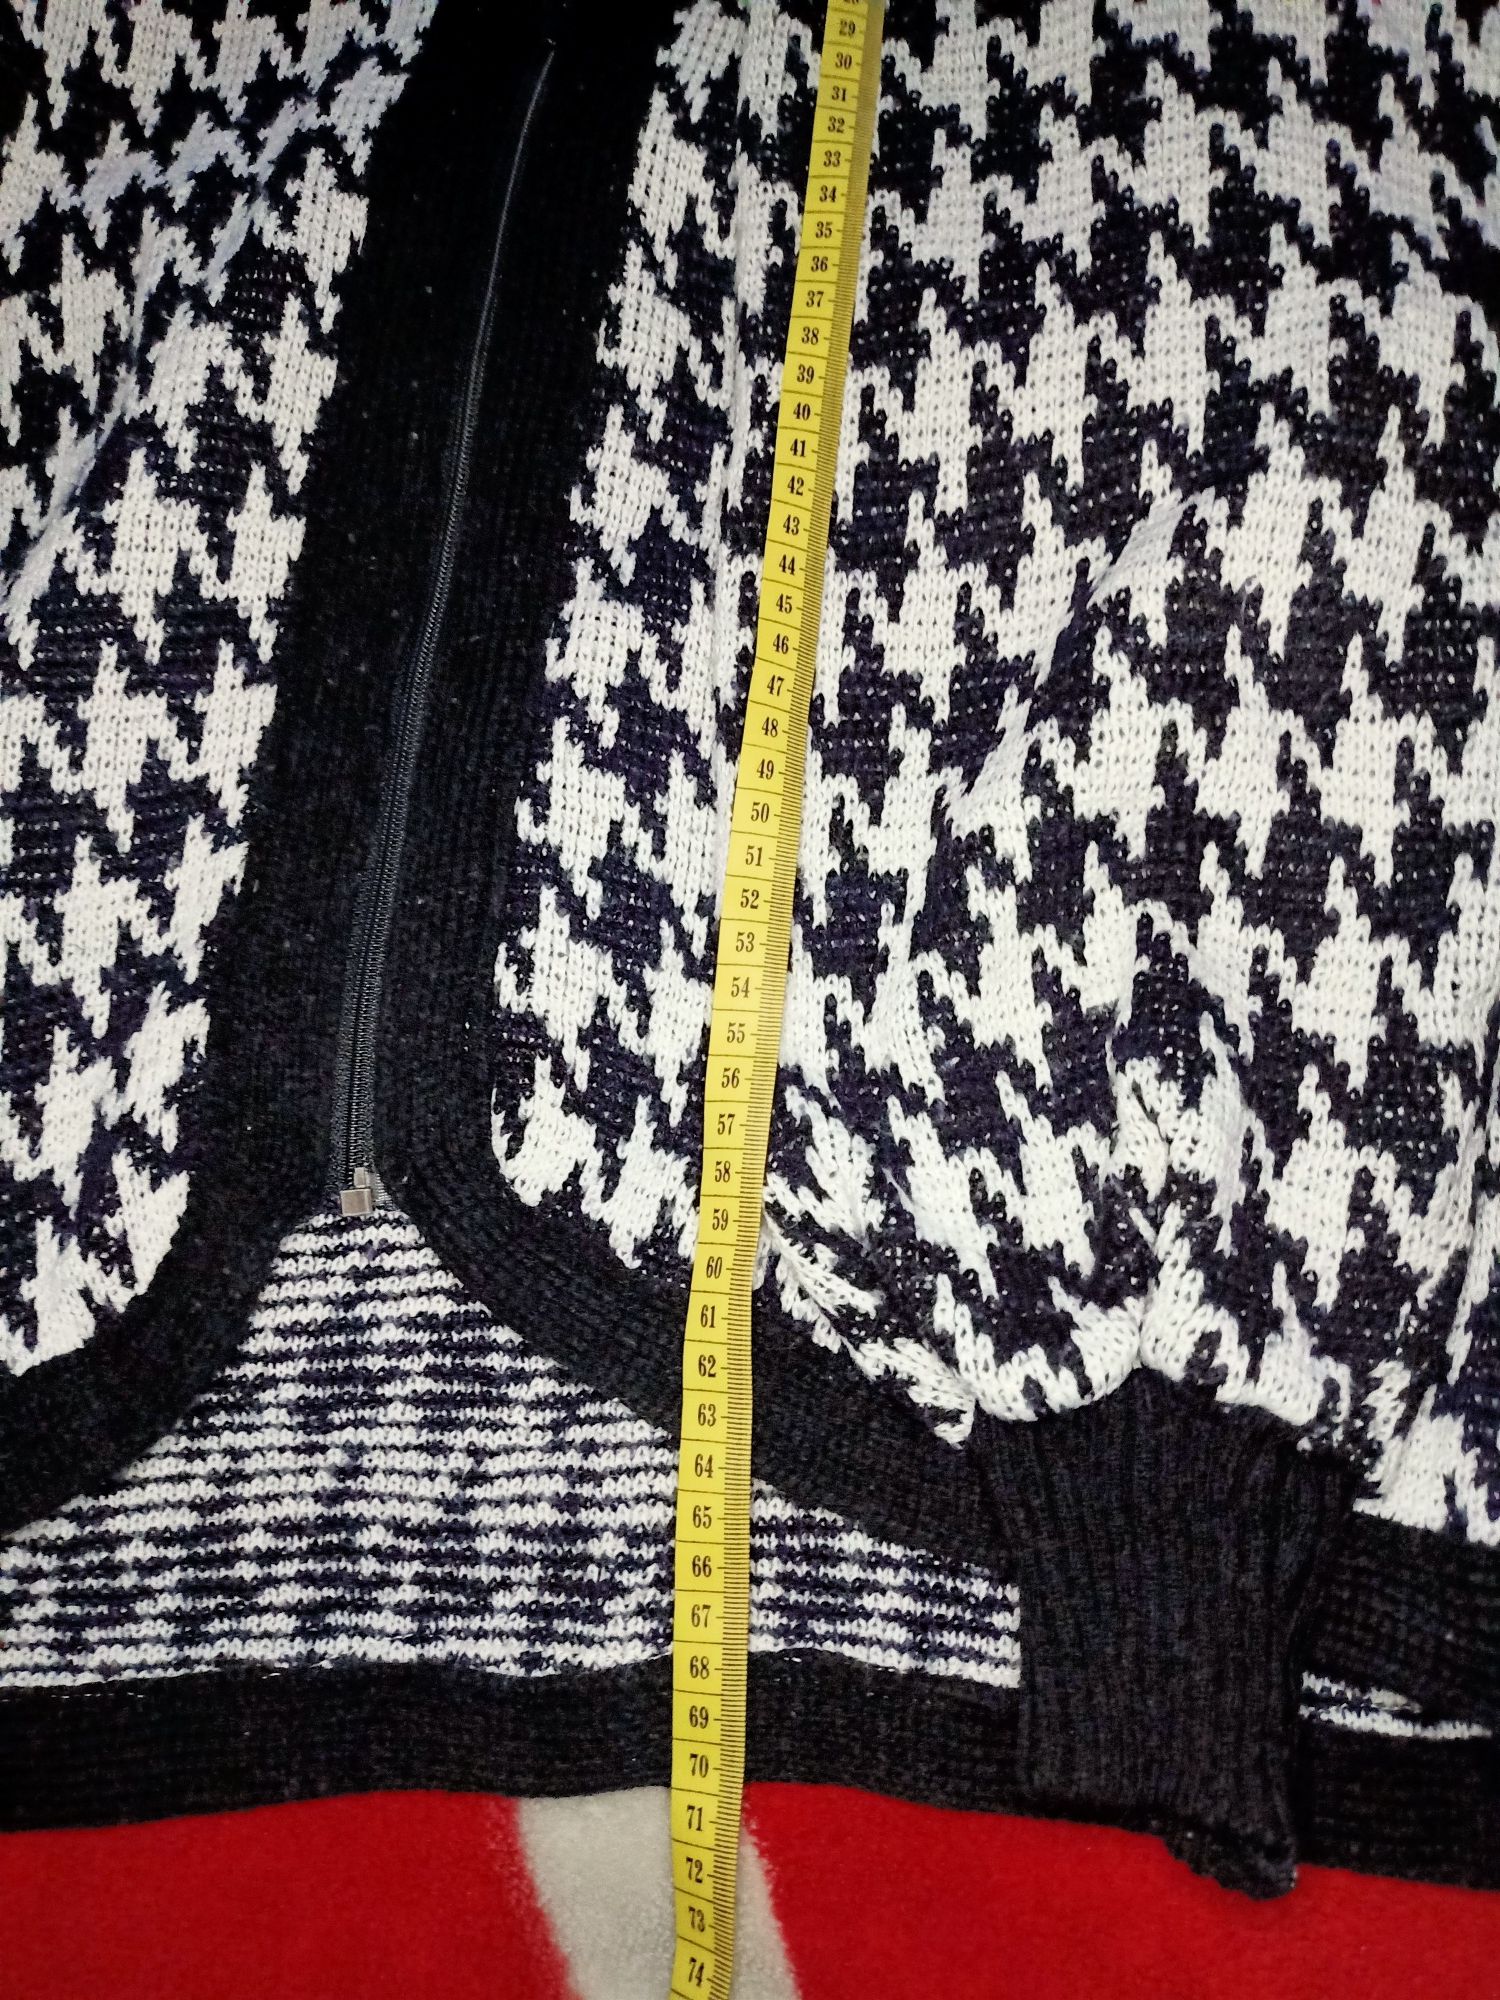 Gruby sweter czarno-biały na suwak